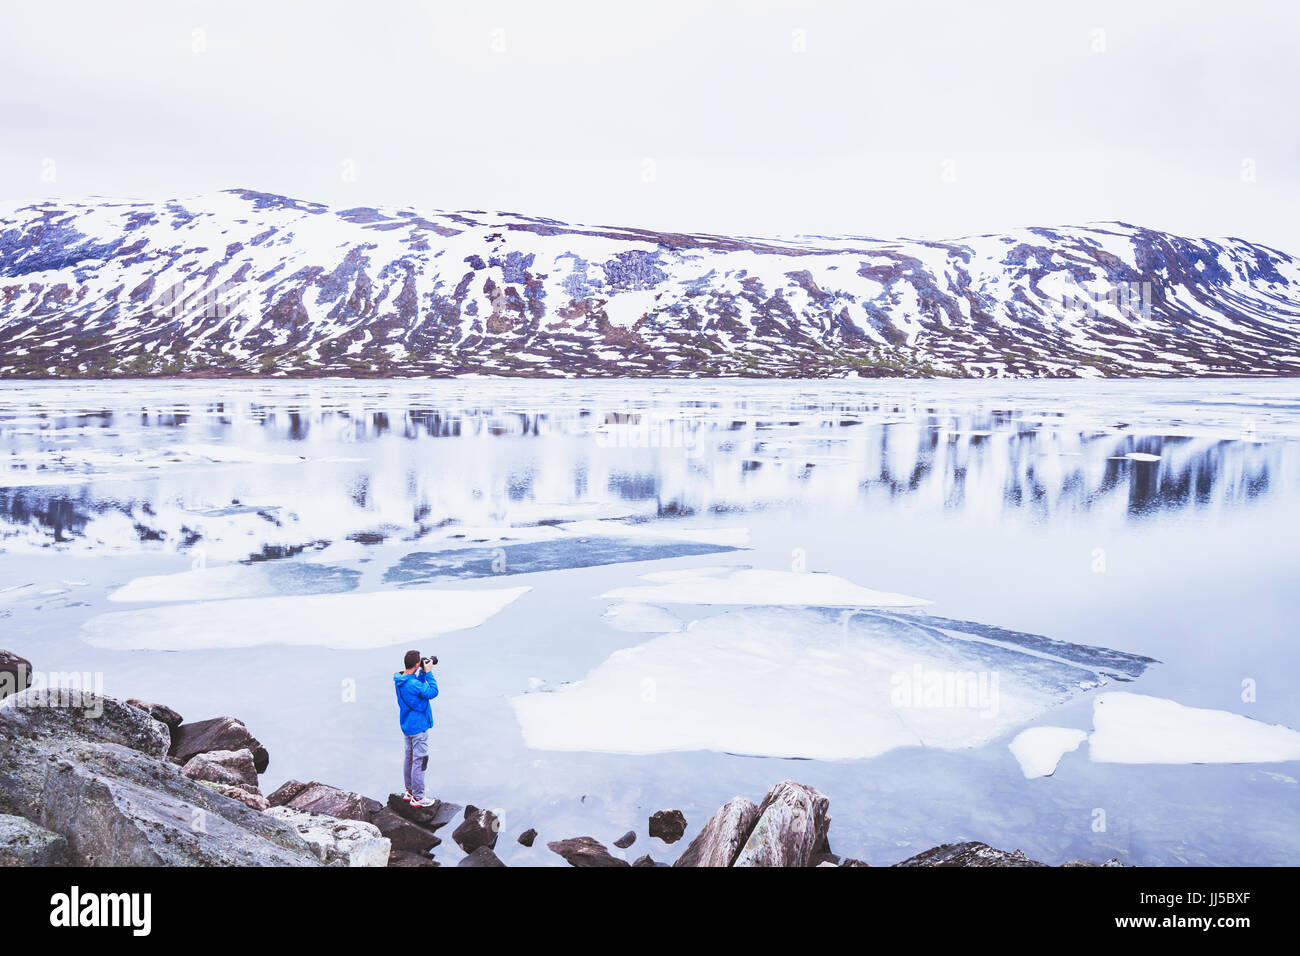 Fotografo di viaggio prendendo la foto del paesaggio innevato in Norvegia in primavera, persona vicino al bellissimo lago ghiacciato in montagna Foto Stock